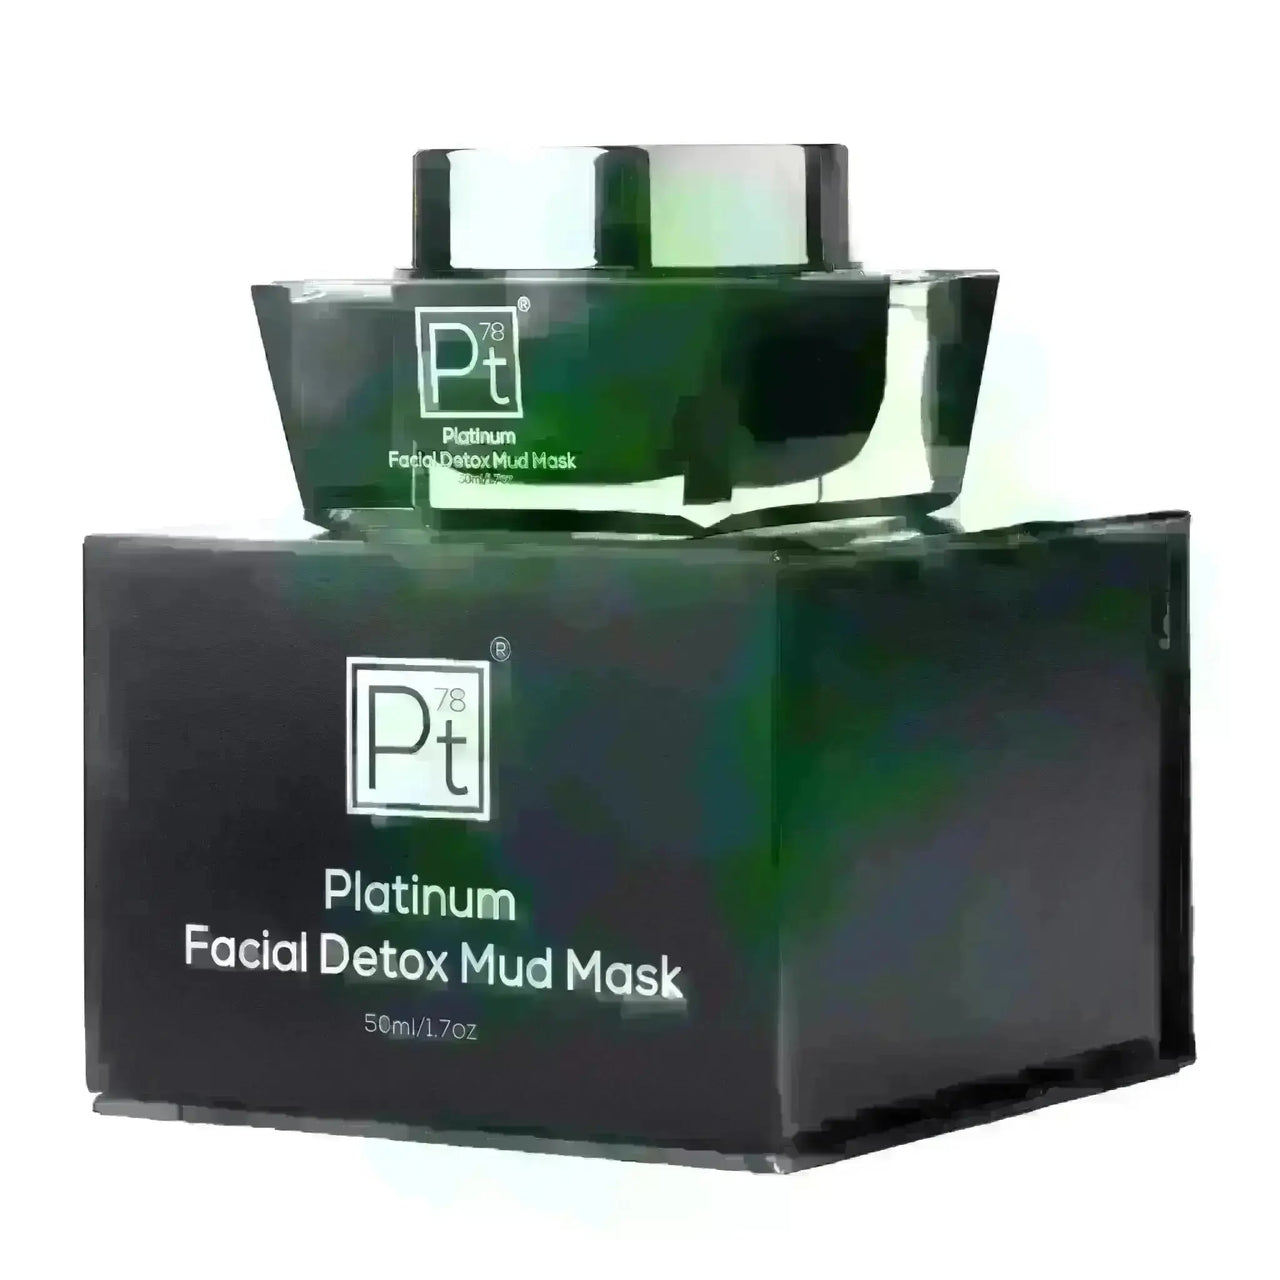 Platinum Facial Detox Mud Mask